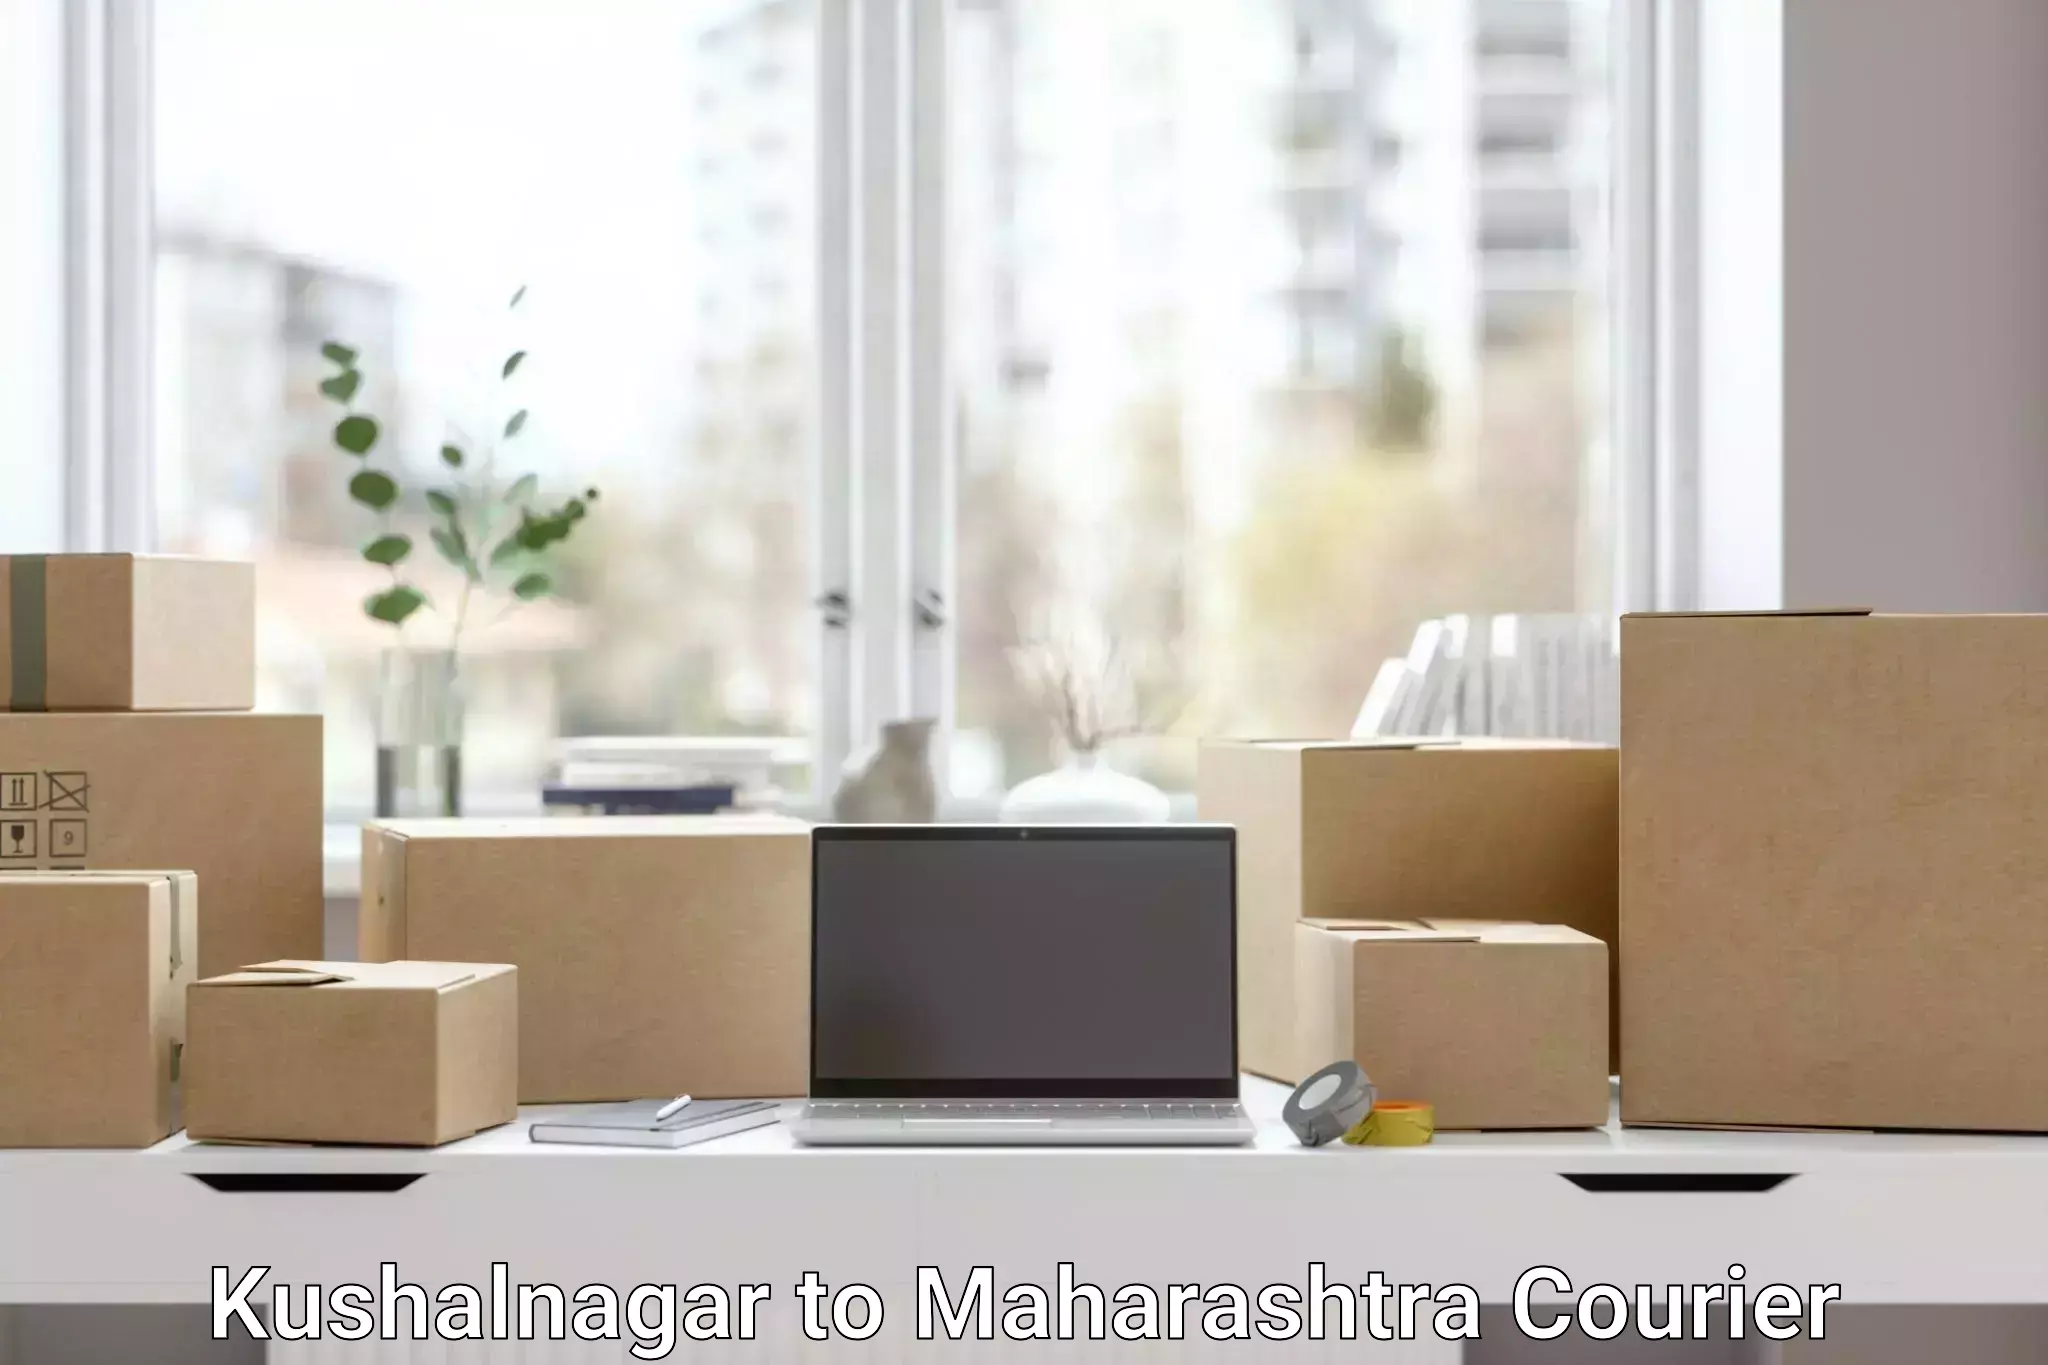 State-of-the-art courier technology Kushalnagar to Maharashtra